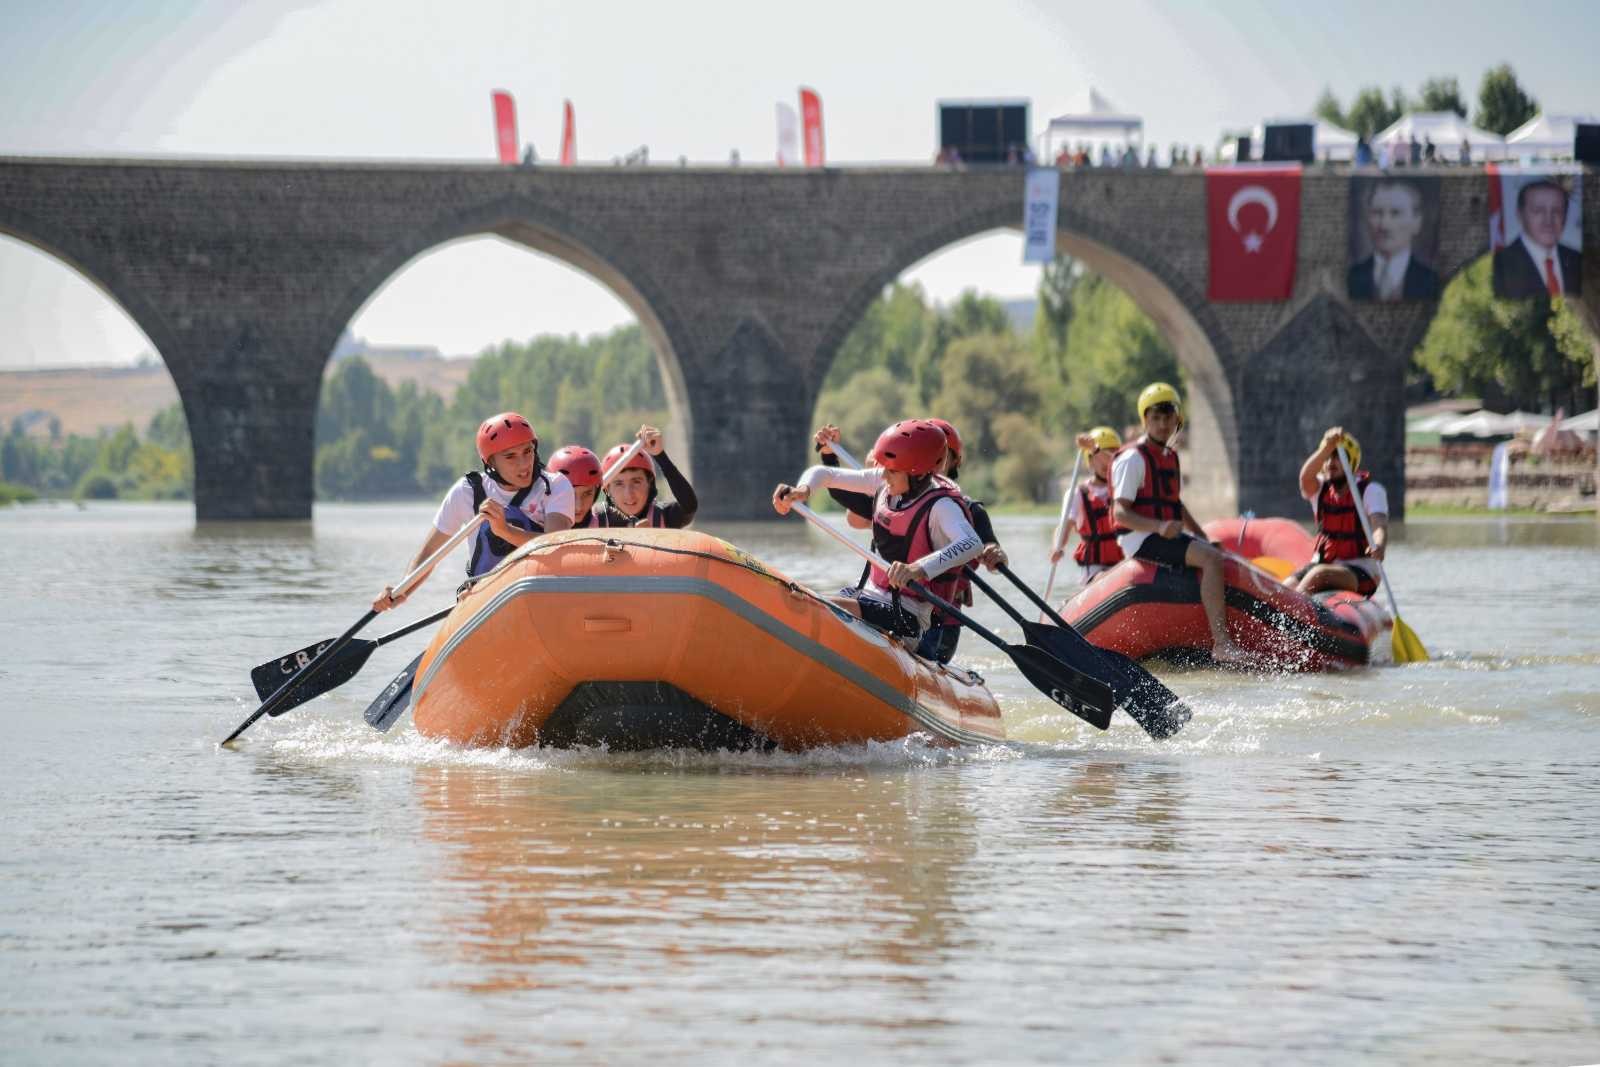 Dicle raftingle buluştu, tarihi köprüde heyacan dolu anlar yaşandı #diyarbakir